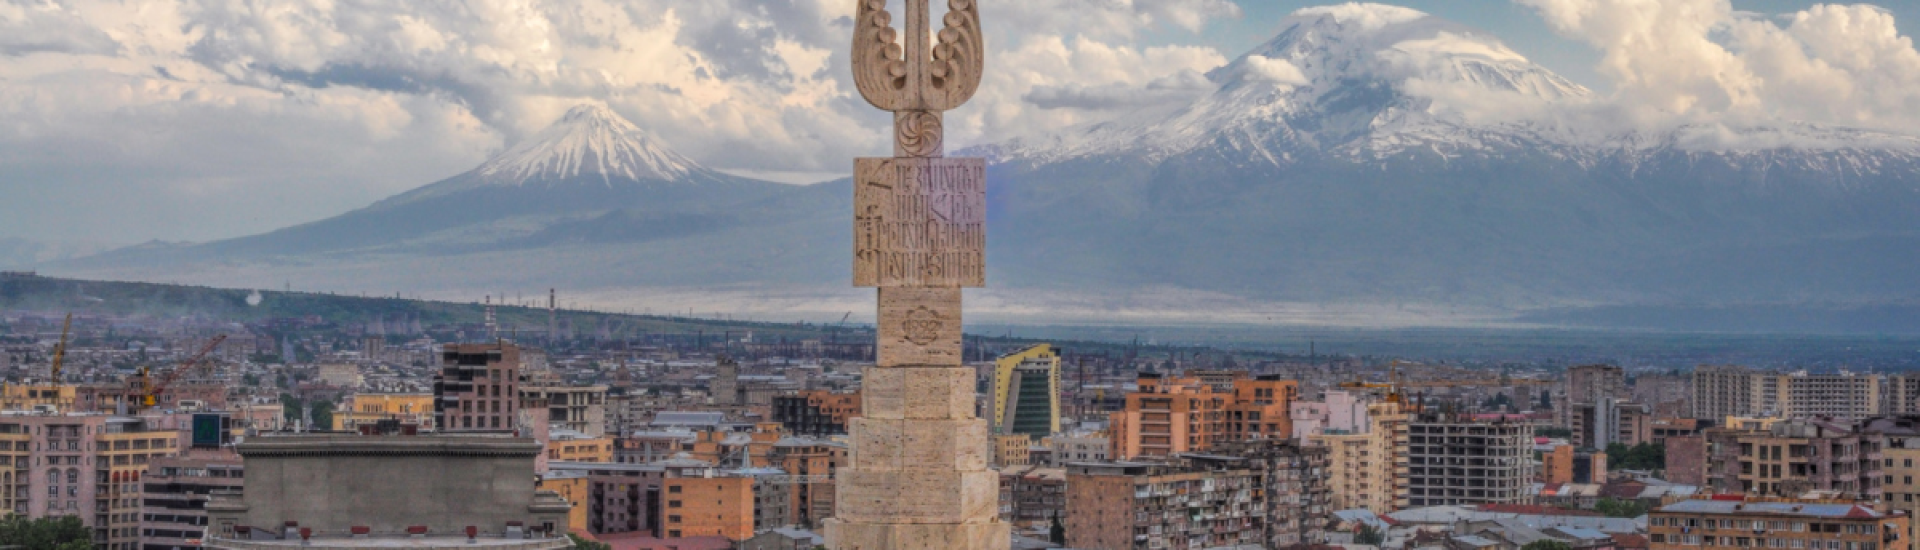 GRATA International проведет вебинар: Открытие бизнеса в Армении